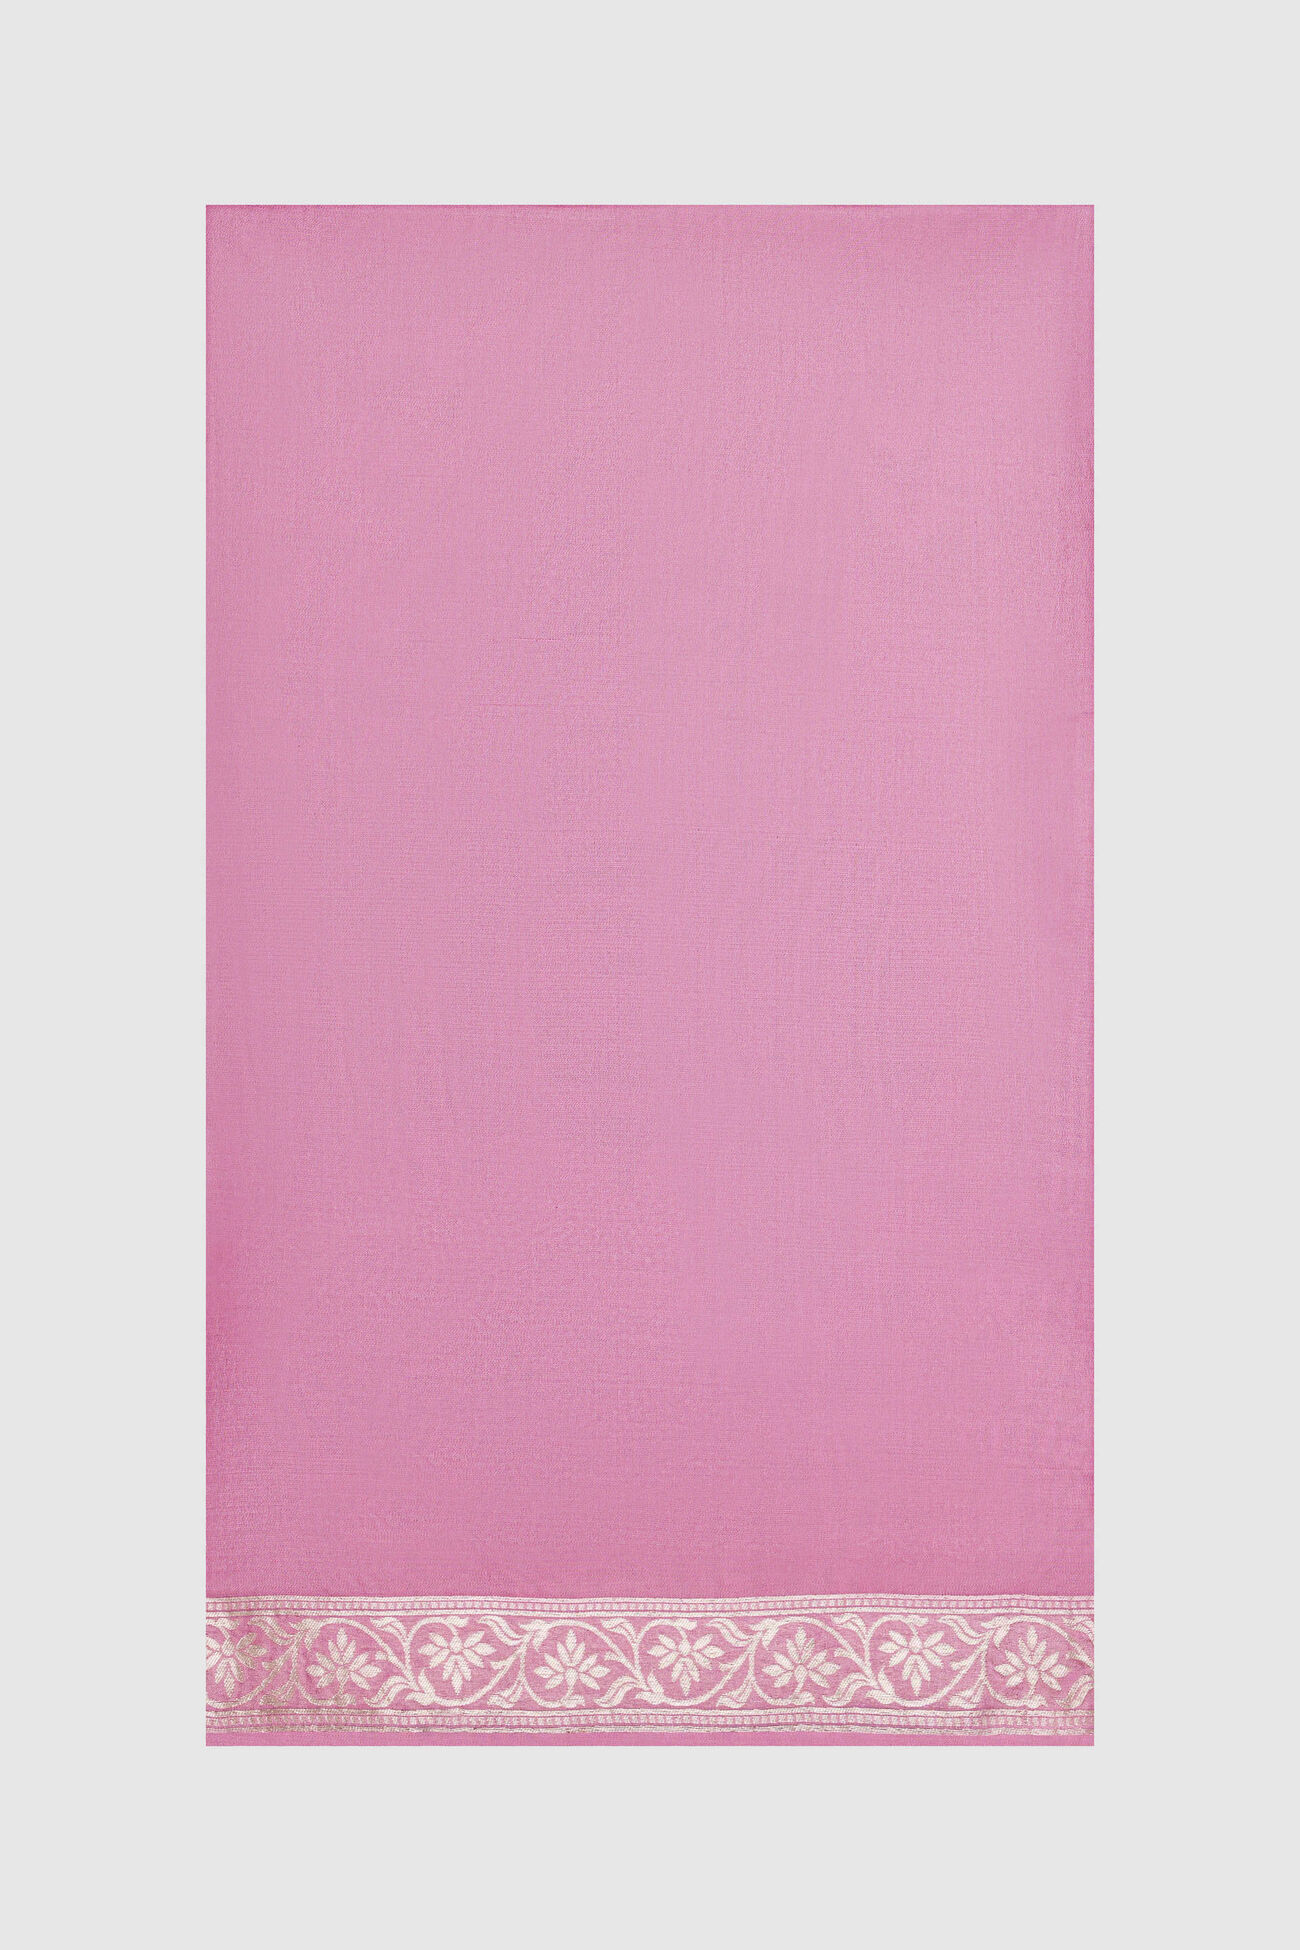 Sahana Benarasi Saree -Pink, Pink, image 3